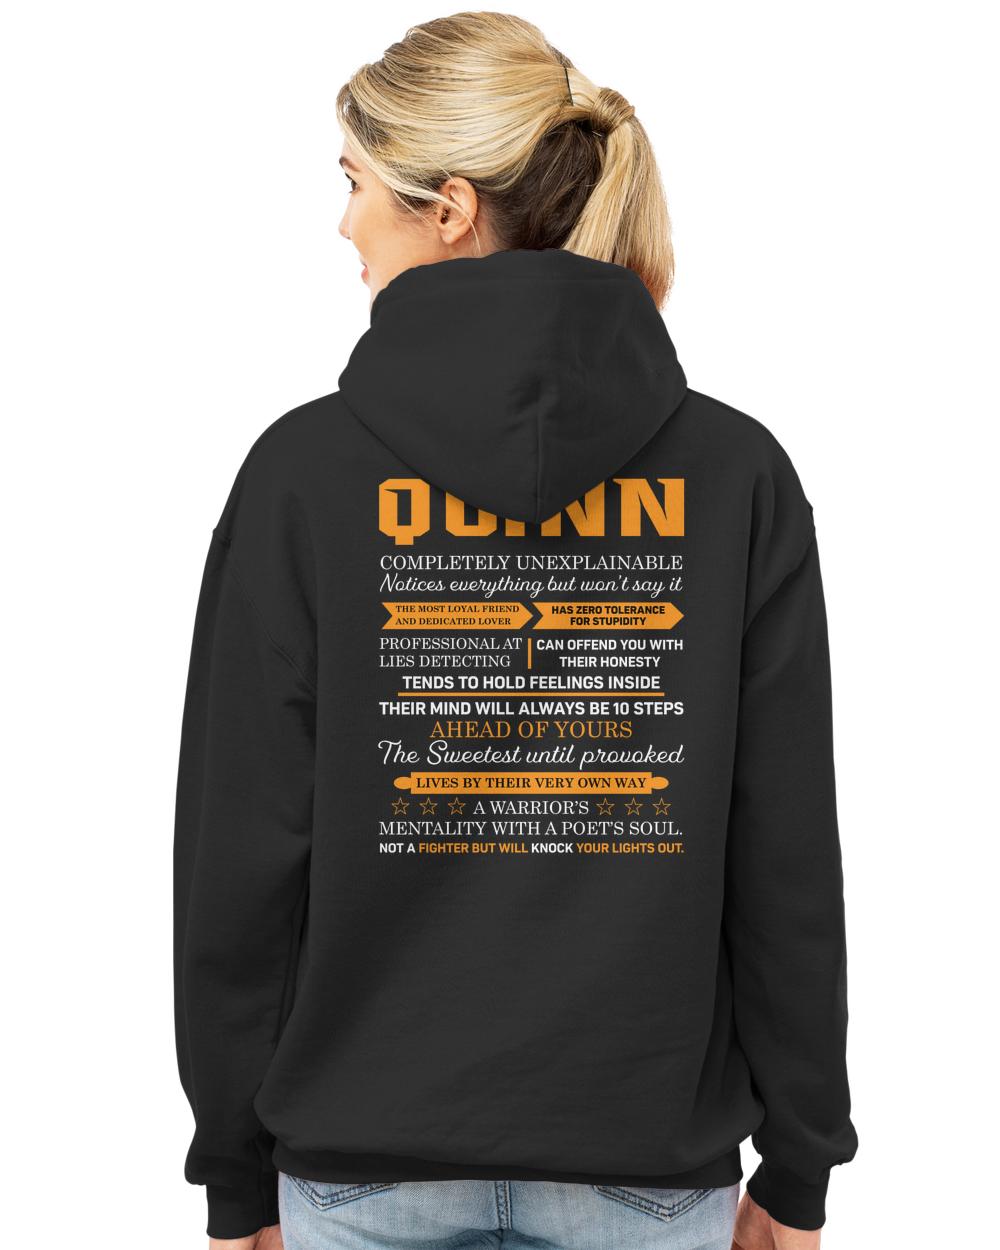 QUINN-H2-N1